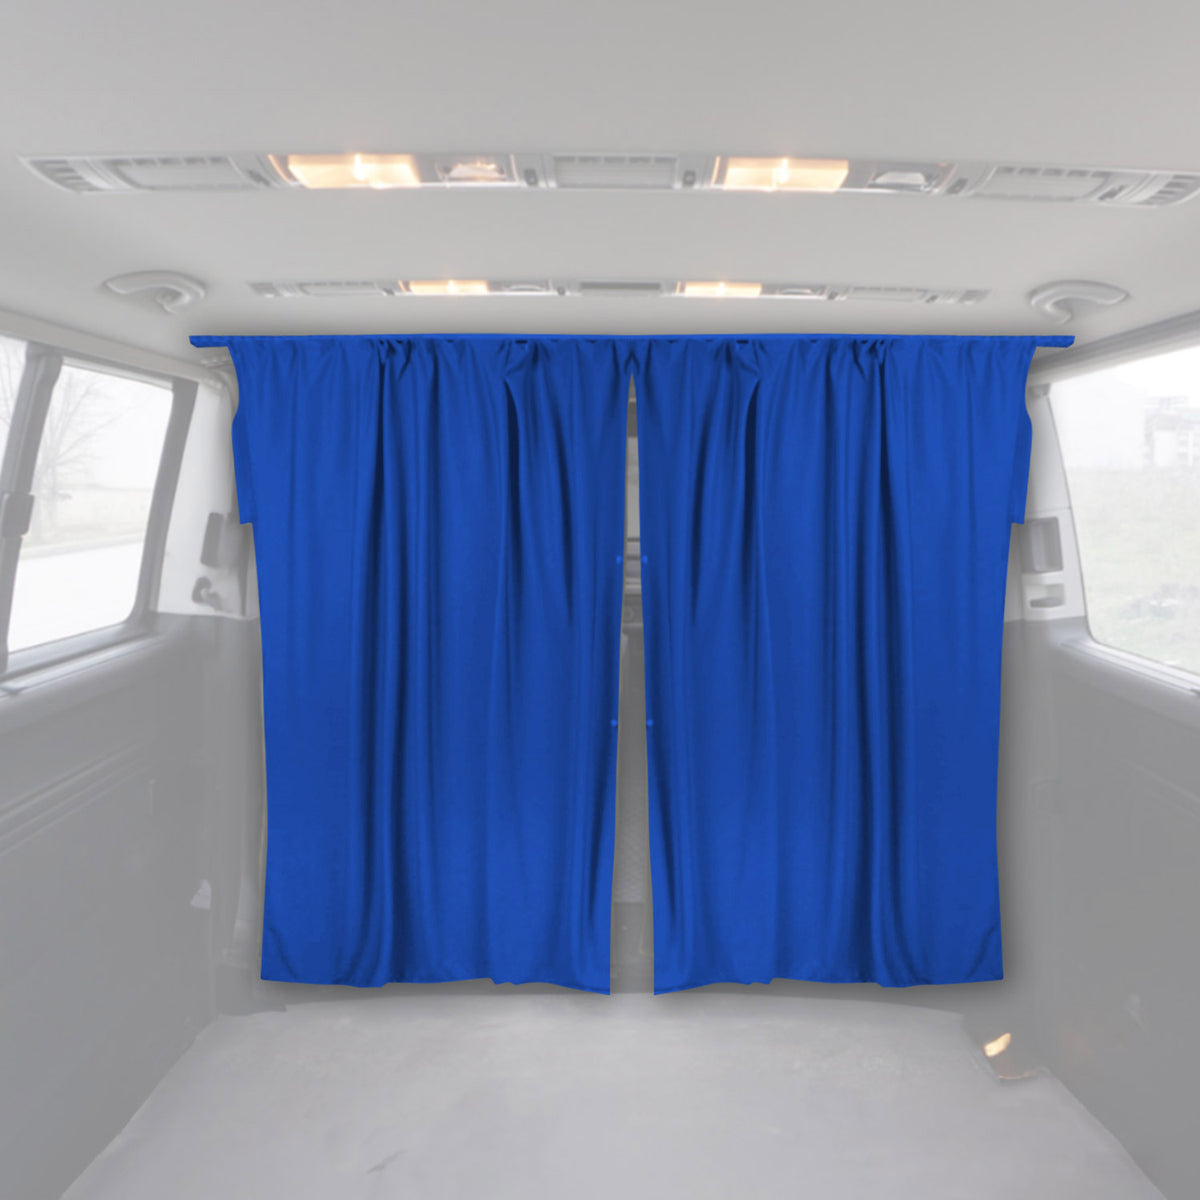 Fahrerhaus Führerhaus Gardinen Sonnenschutz für Fiat Fiorino Qubo Blau 2tlg